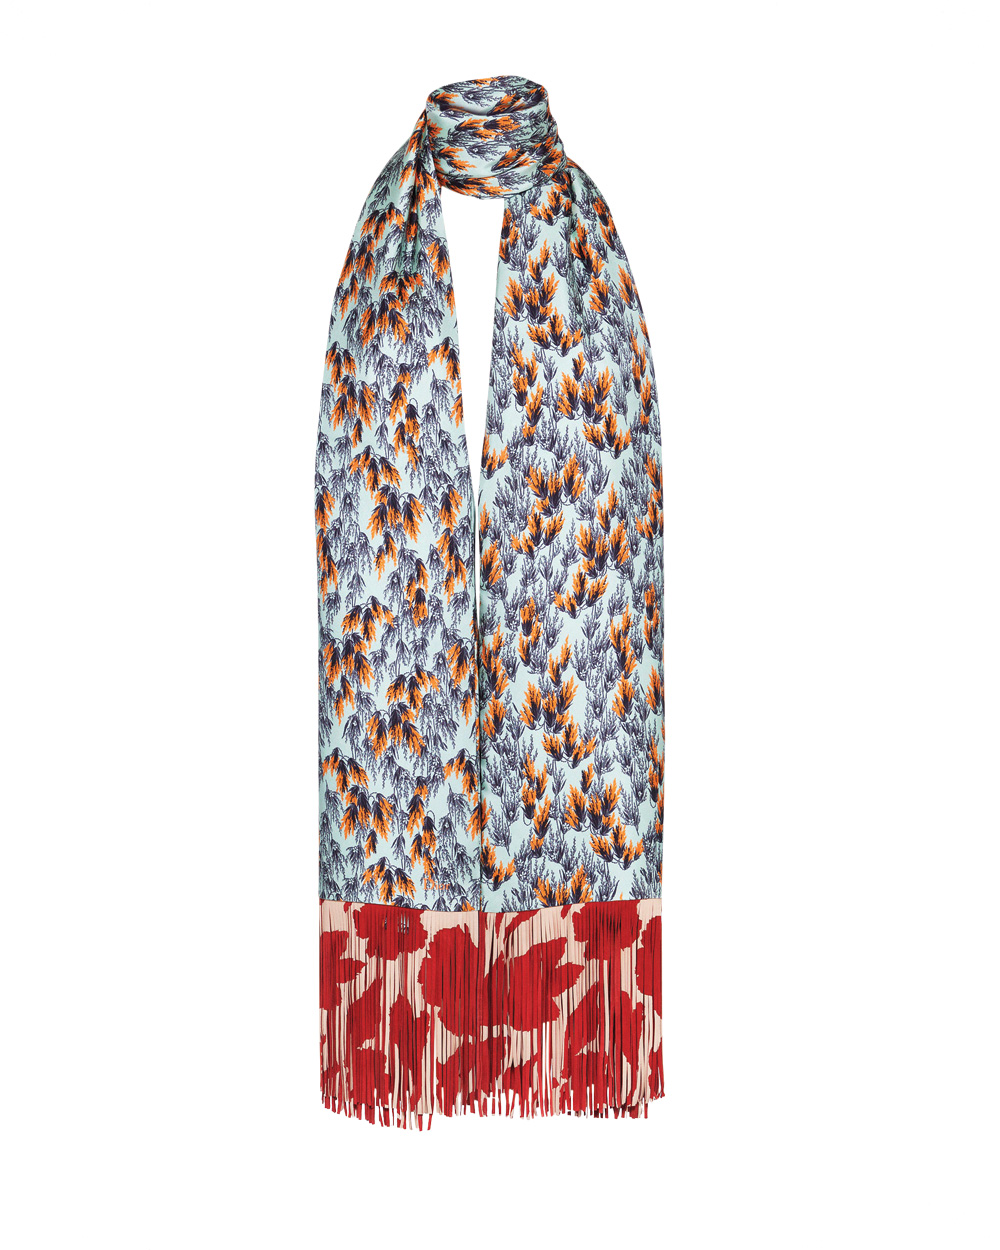 Christian Dior scarf, $2600